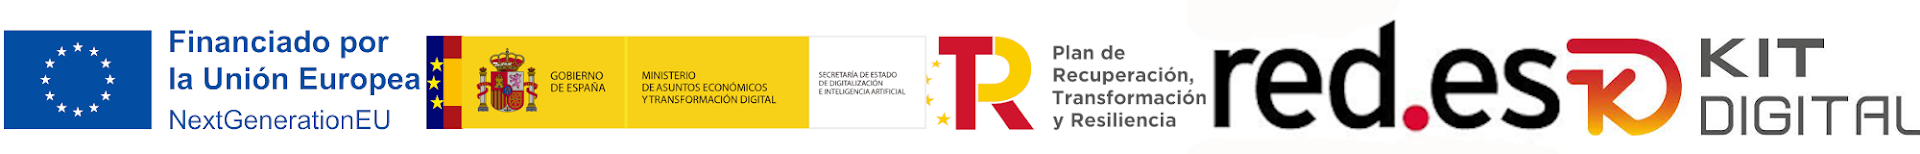 Logo de financiado por la union europea, gobierno de españa, plan de recuperación transformación y resilencia, red.es y kit digital